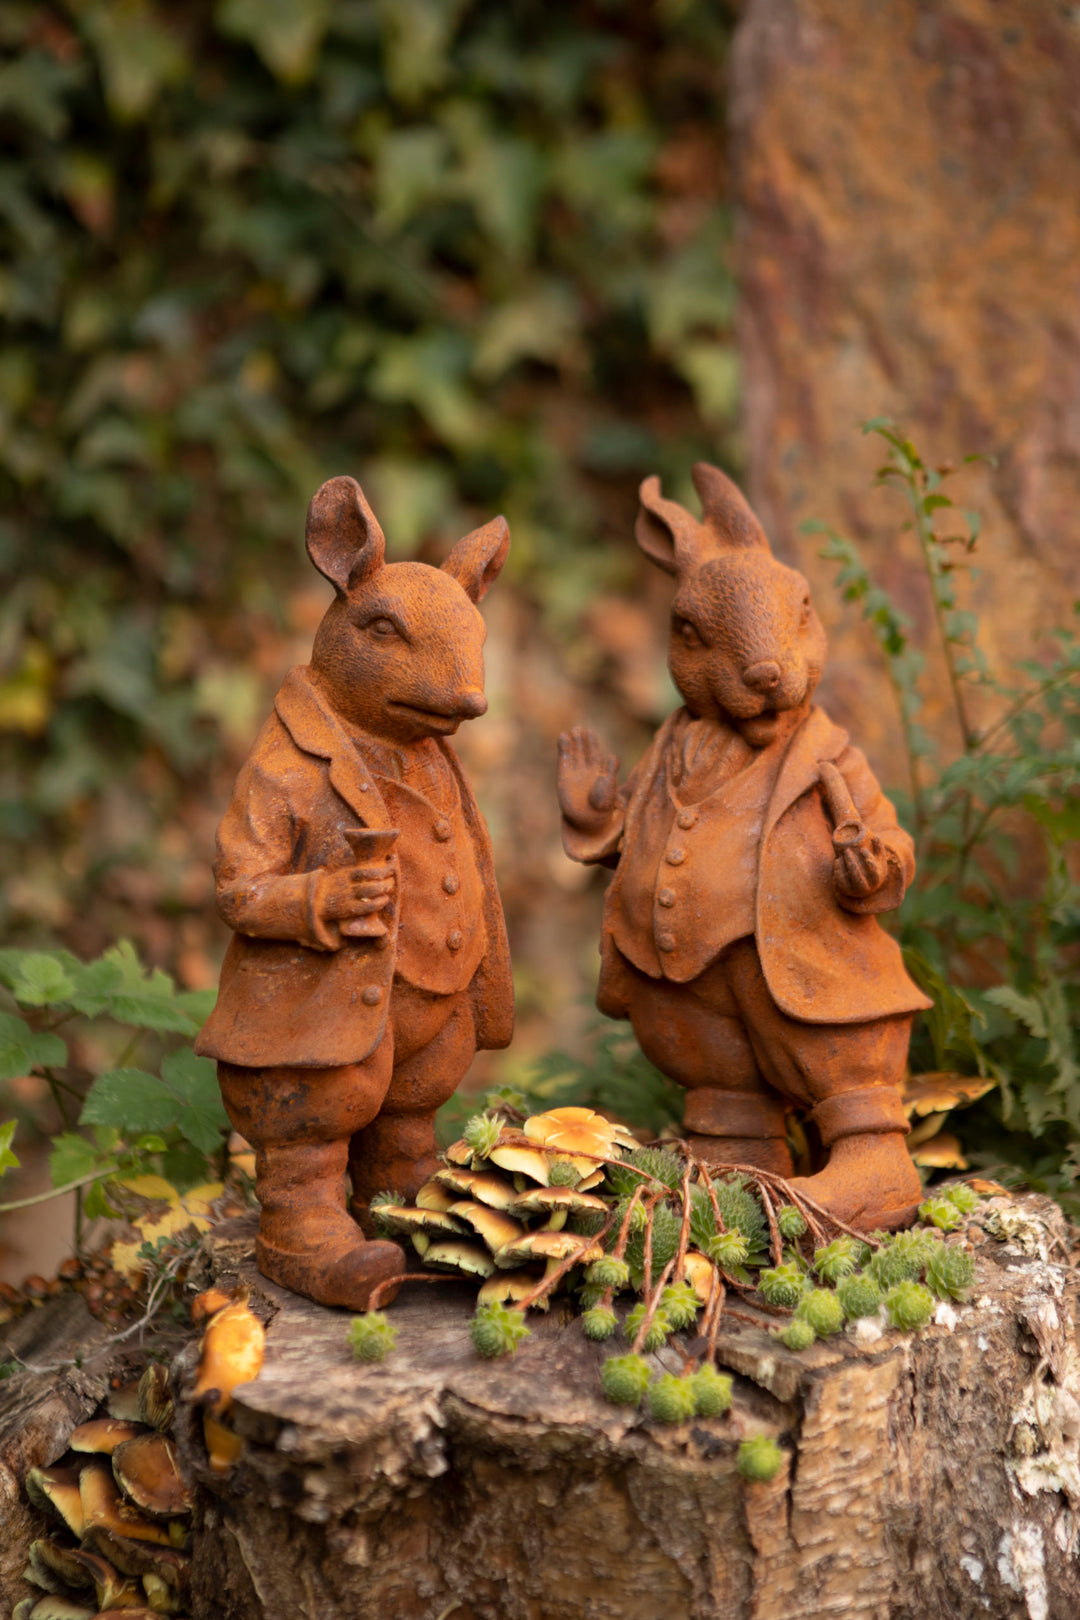 Outdoor Peter Rabbit Sculpture –  Mr. Rabbit Vintage Garden Figure